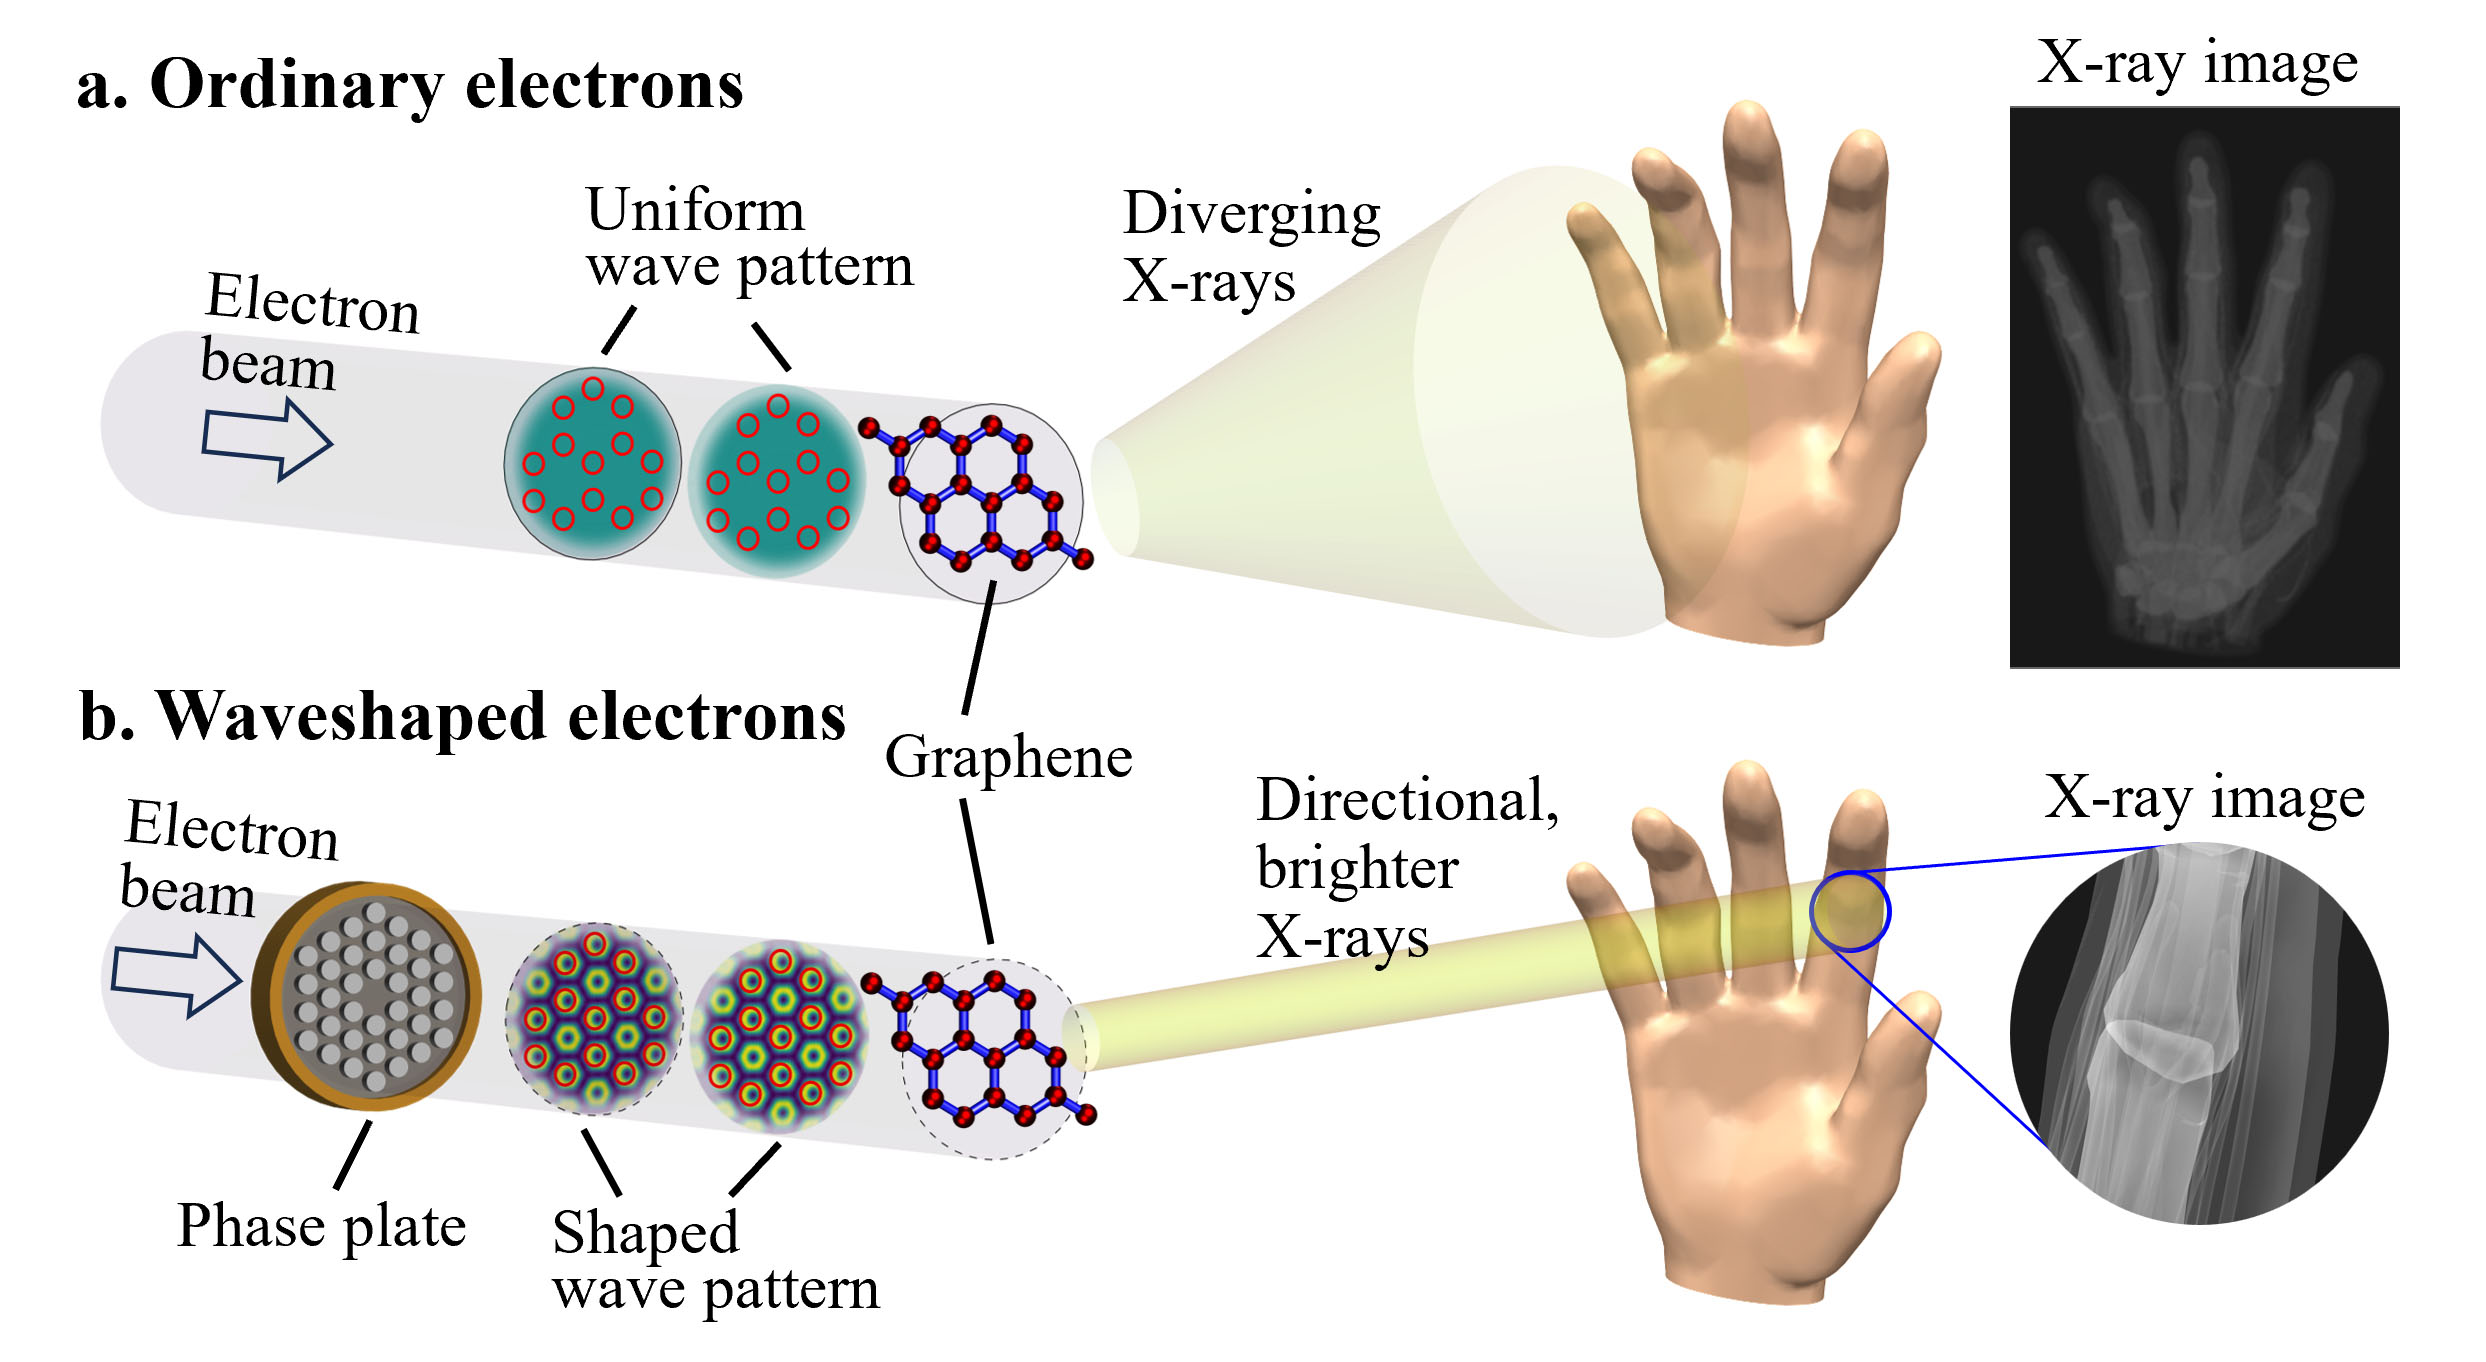 Imagen de rayos X de electrones ordinarios o electrones en forma de onda.